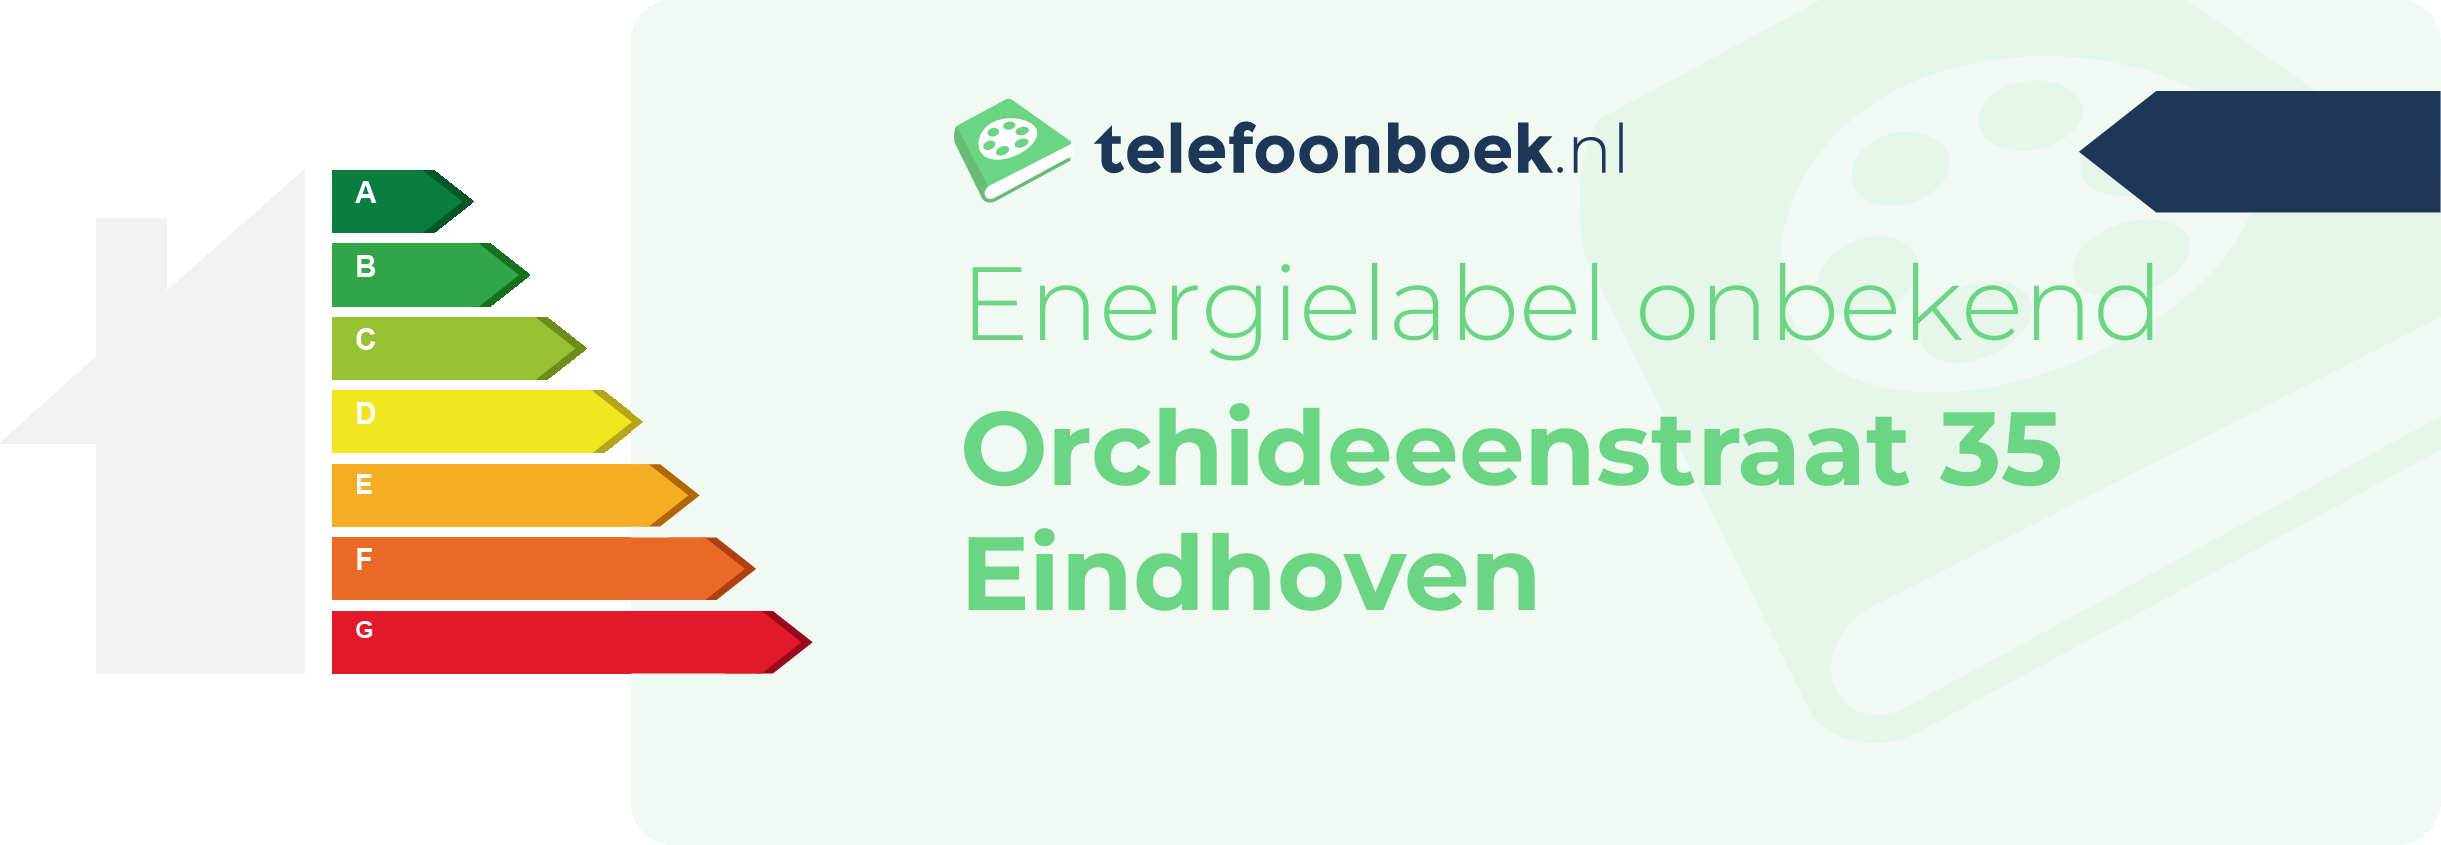 Energielabel Orchideeenstraat 35 Eindhoven